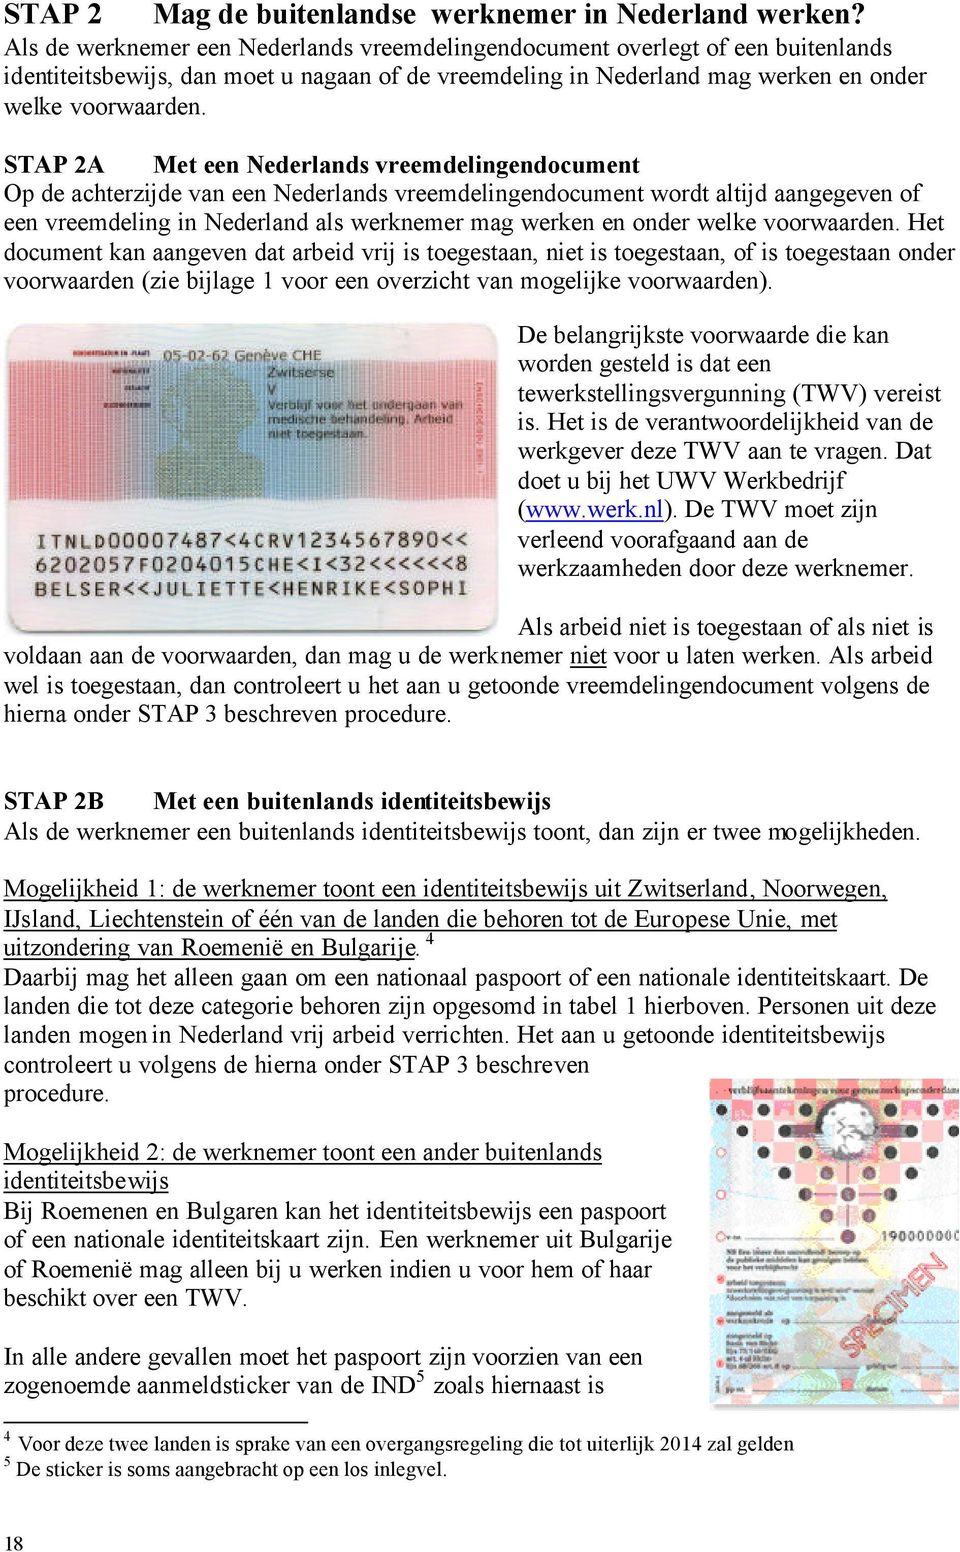 STAP 2A Met een Nederlands vreemdelingendocument Op de achterzijde van een Nederlands vreemdelingendocument wordt altijd aangegeven of een vreemdeling in Nederland als werknemer mag werken en onder